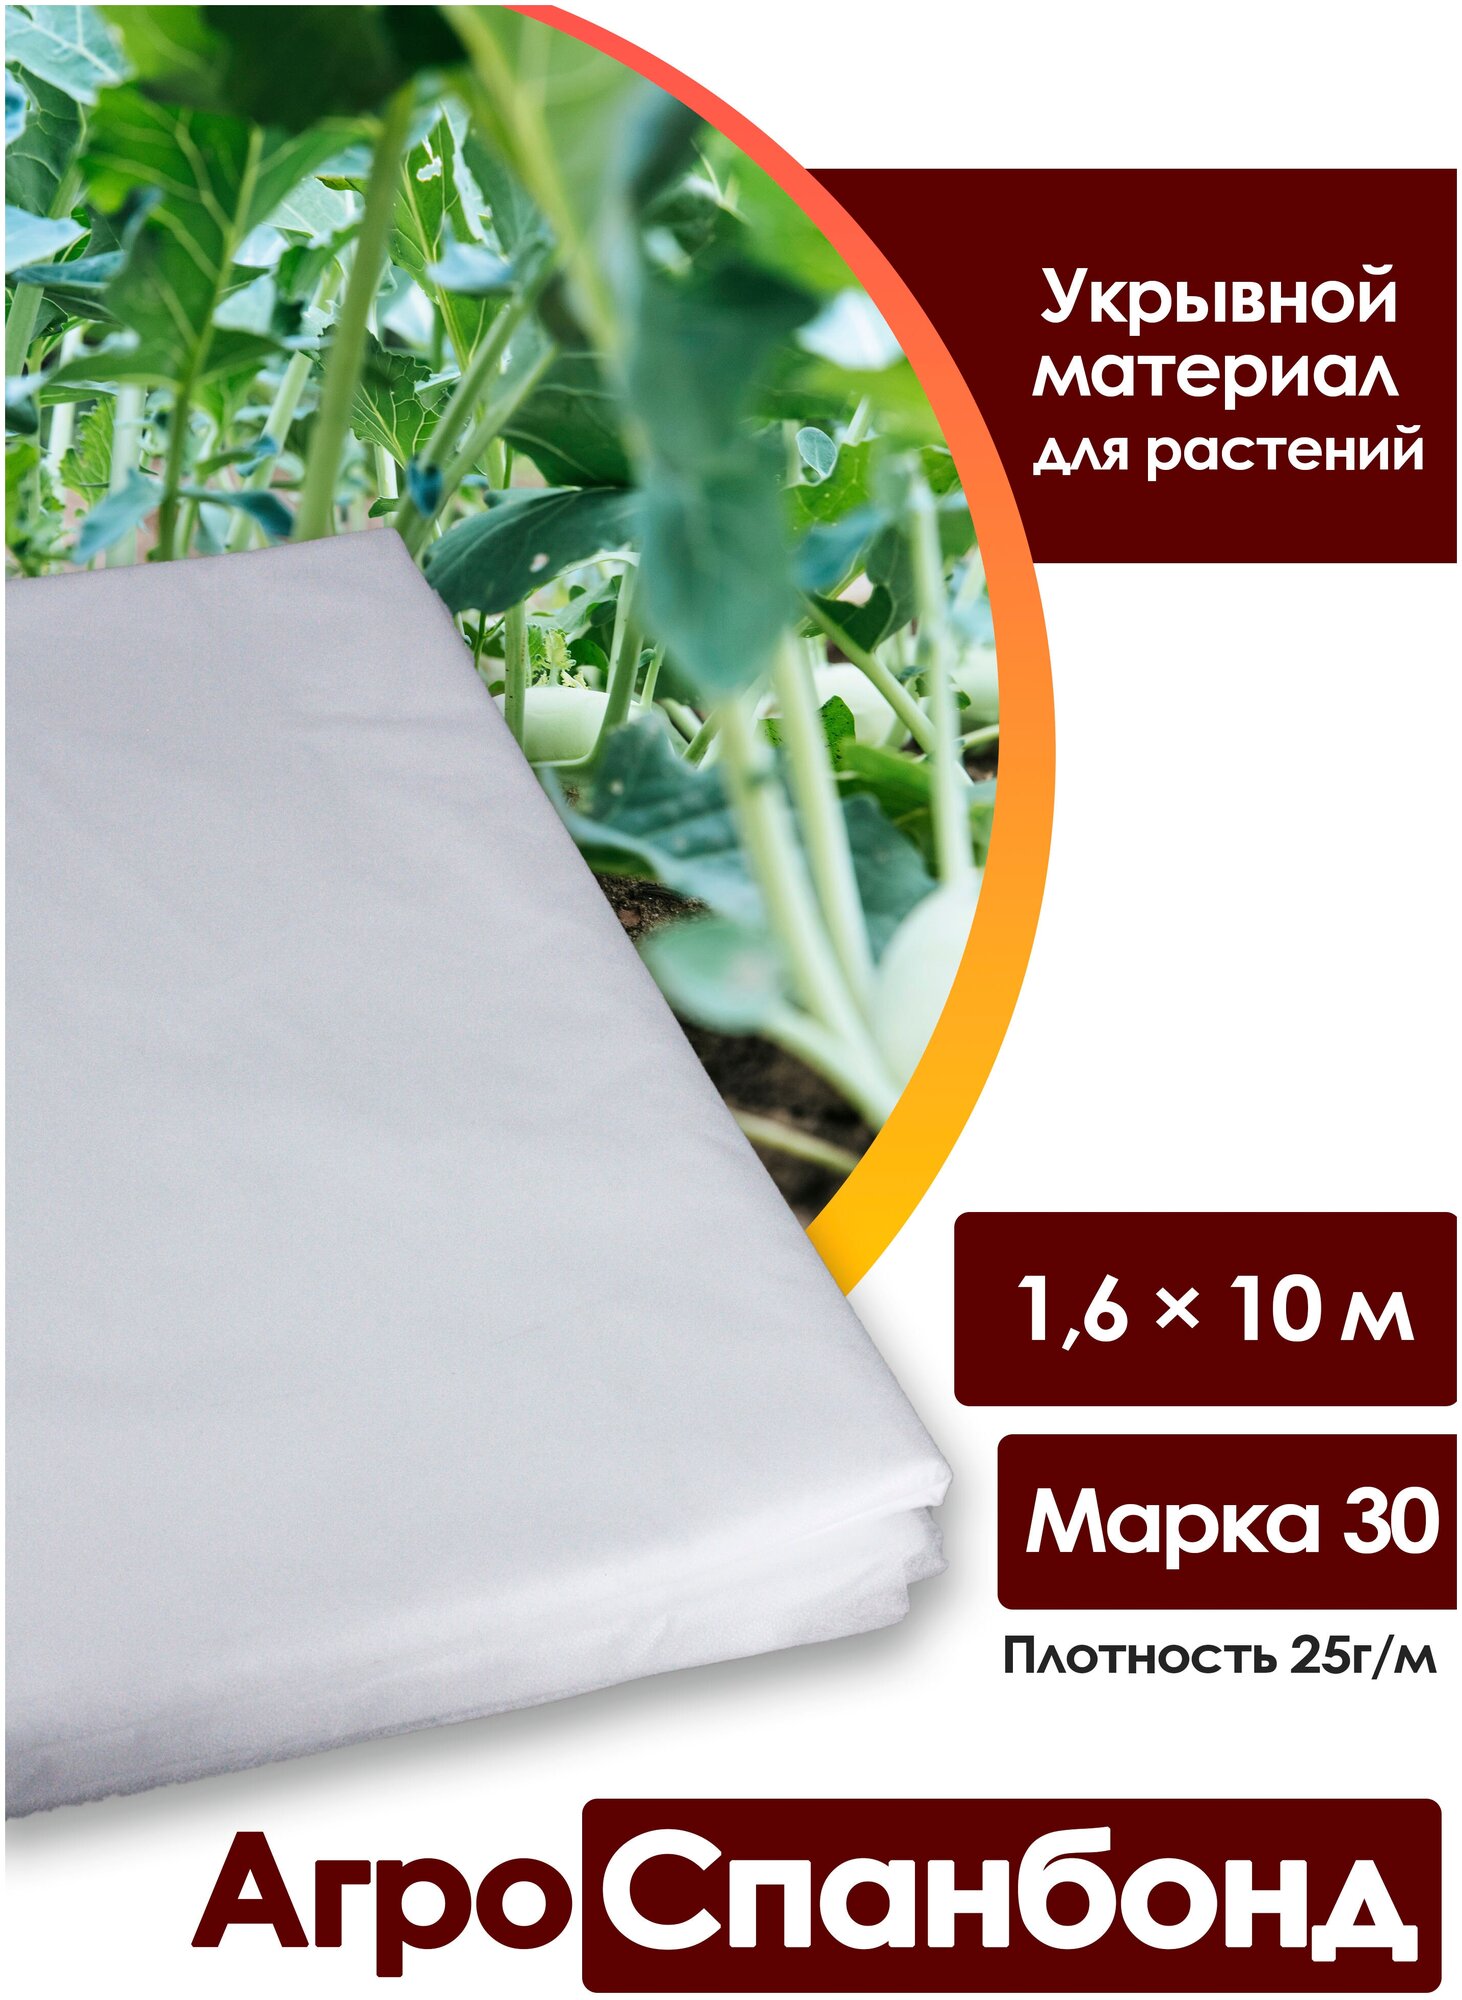 Body Pillow / Спанбонд укрывной 1,6х10 м, плотность 25 г/м2, марка "30"/ Агротекстиль для теплиц, растений / Нетканый укрывной материал - фотография № 1